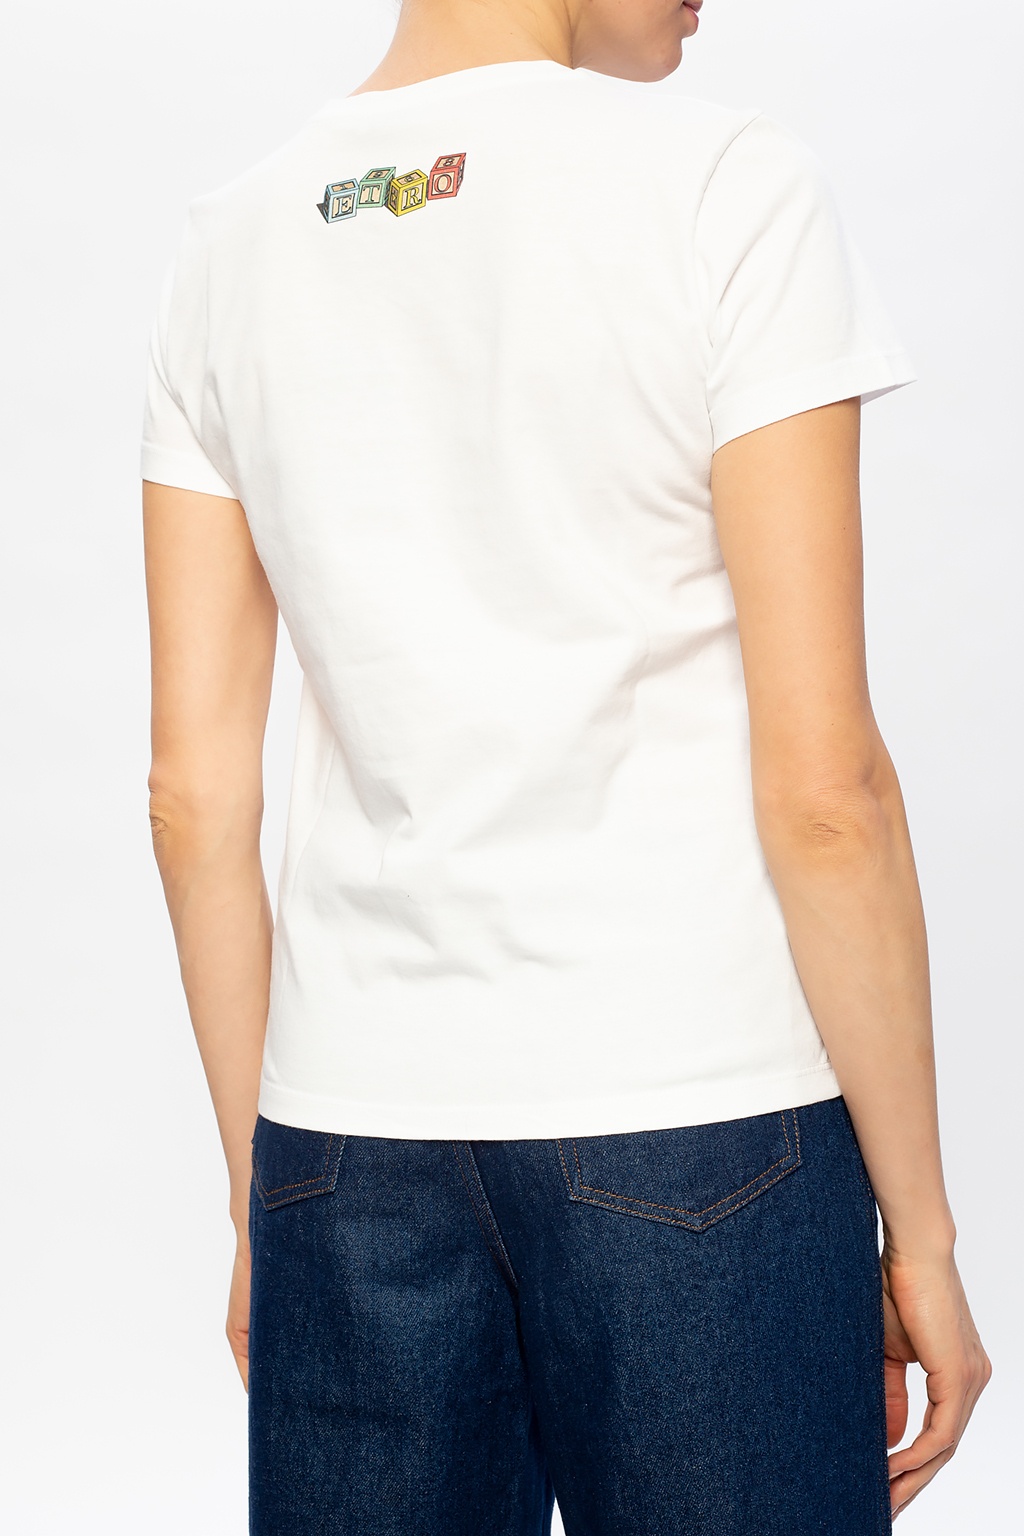 Etro Logo T-shirt | Women's Clothing | IetpShops